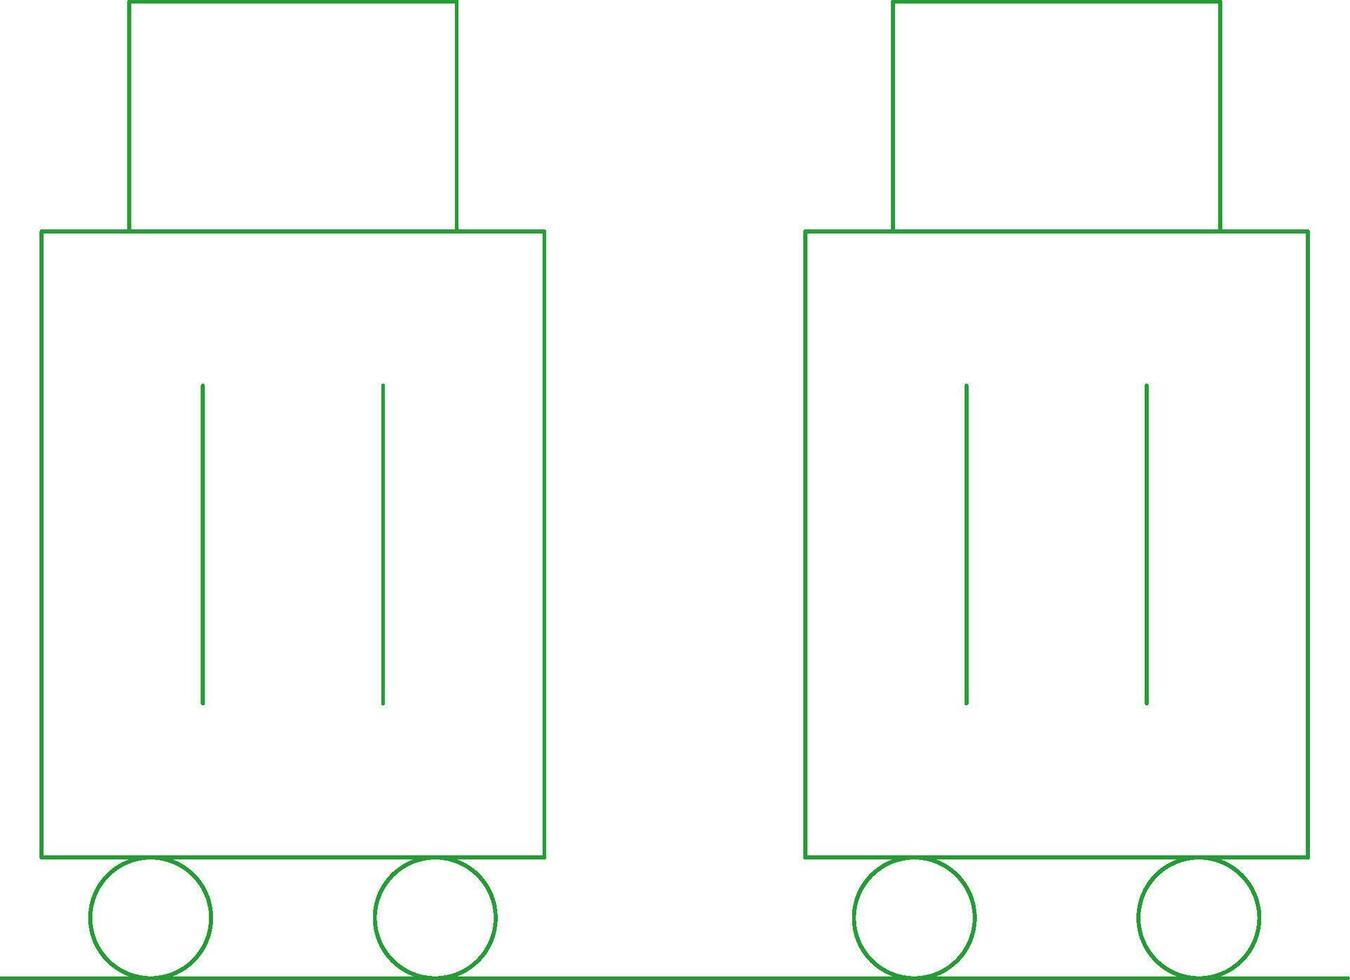 línea verde degradado diseño vector